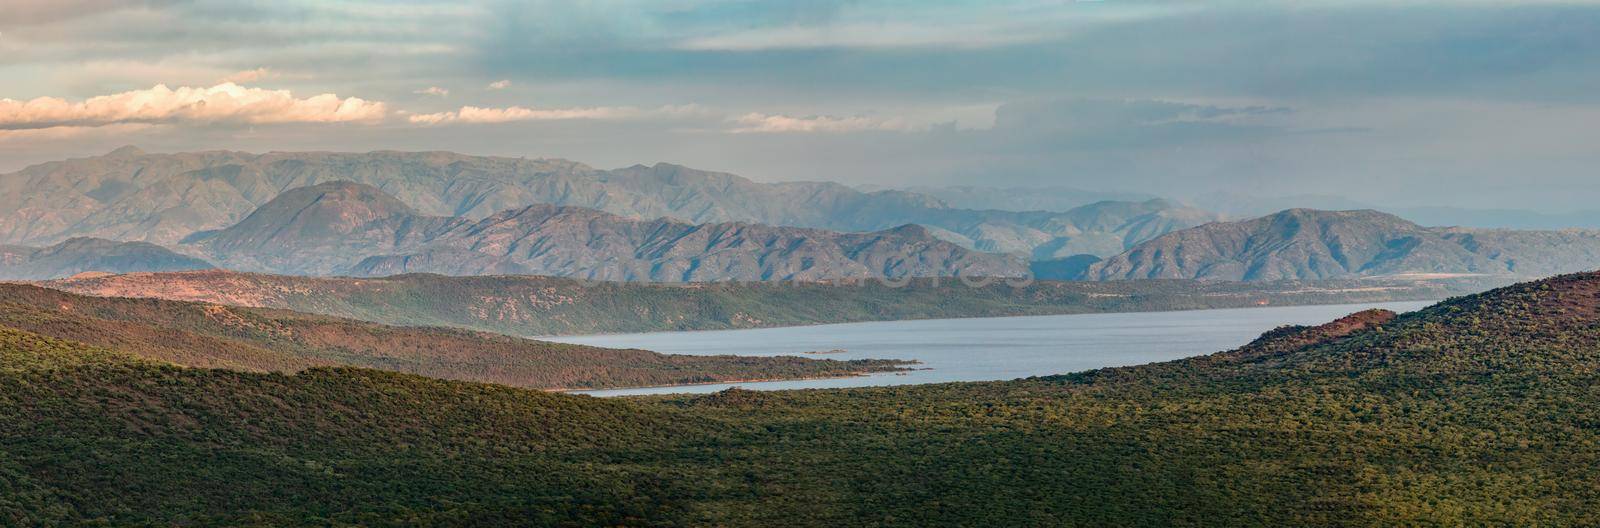 Lake Chamo landscape, Ethiopia Africa by artush